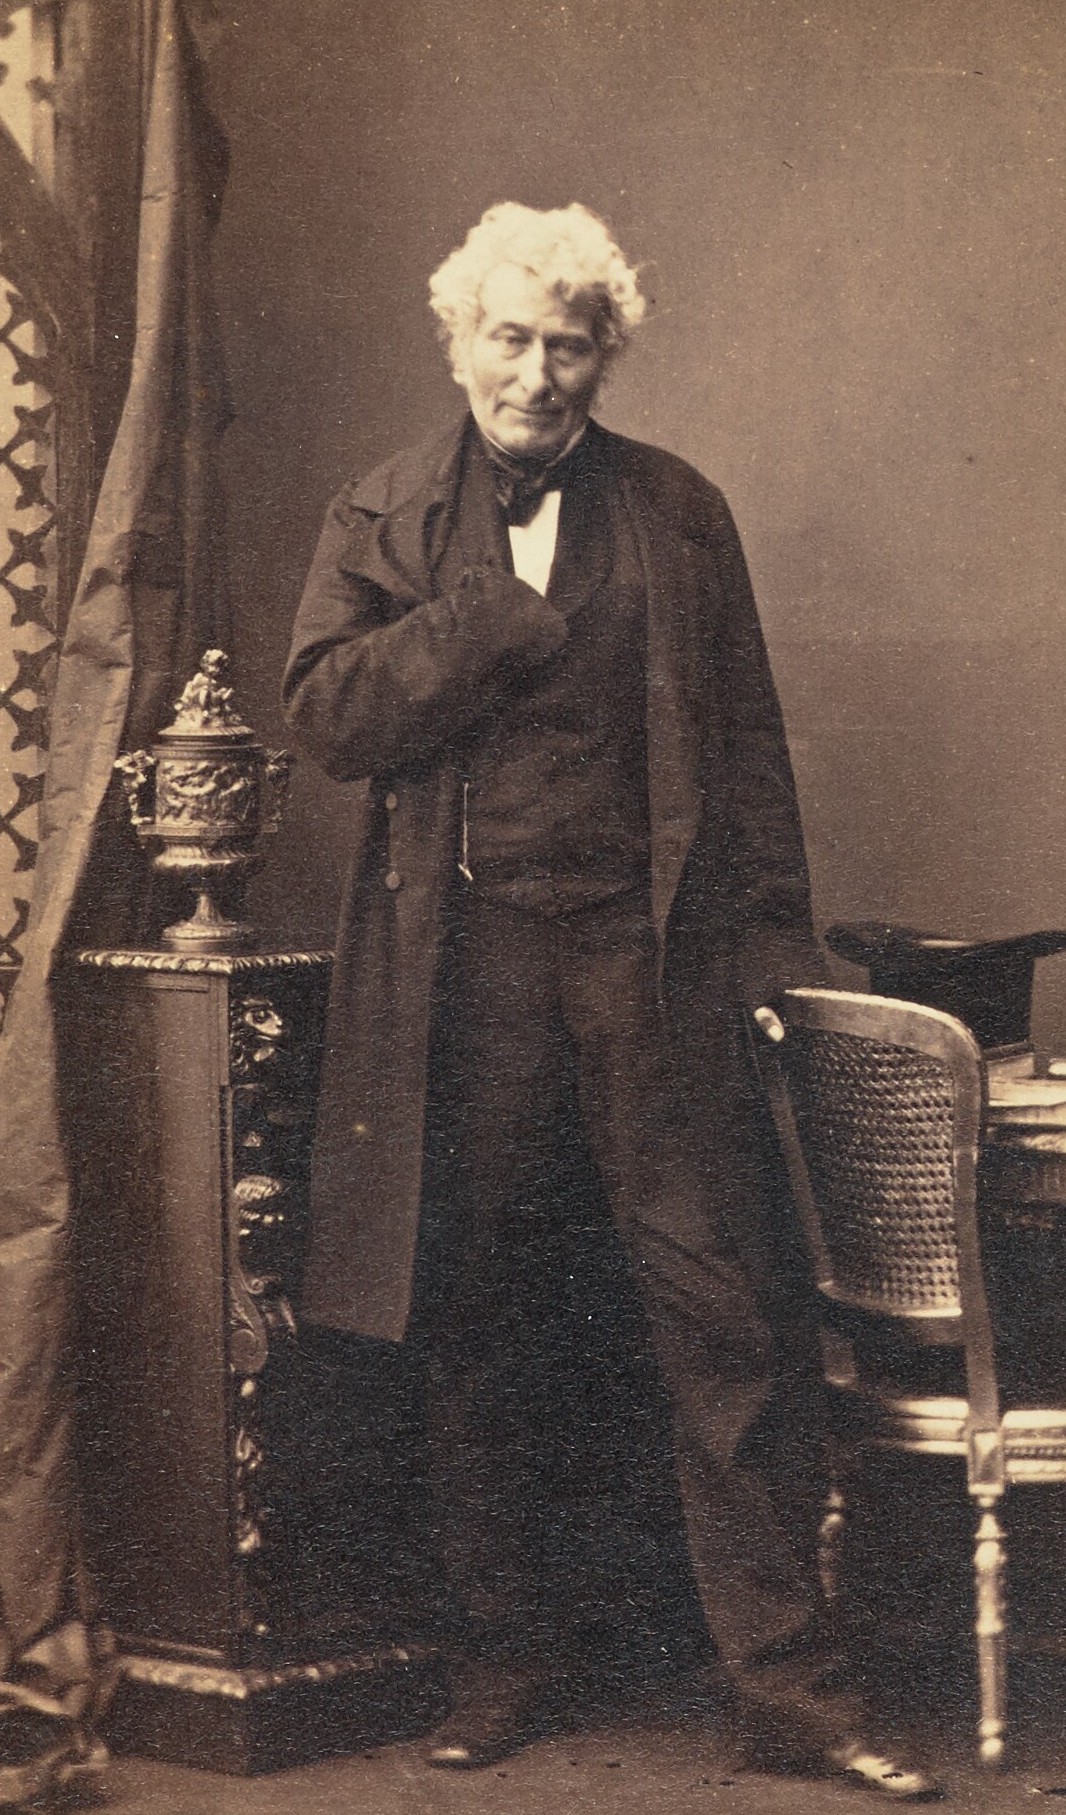 Edward Law, Earl of Ellenborough, c. 1861 from Camille Silvy’s Portrait Cartes-de-visite album of Eminent Victorians. The J. Paul Getty Museum. Public Domain.